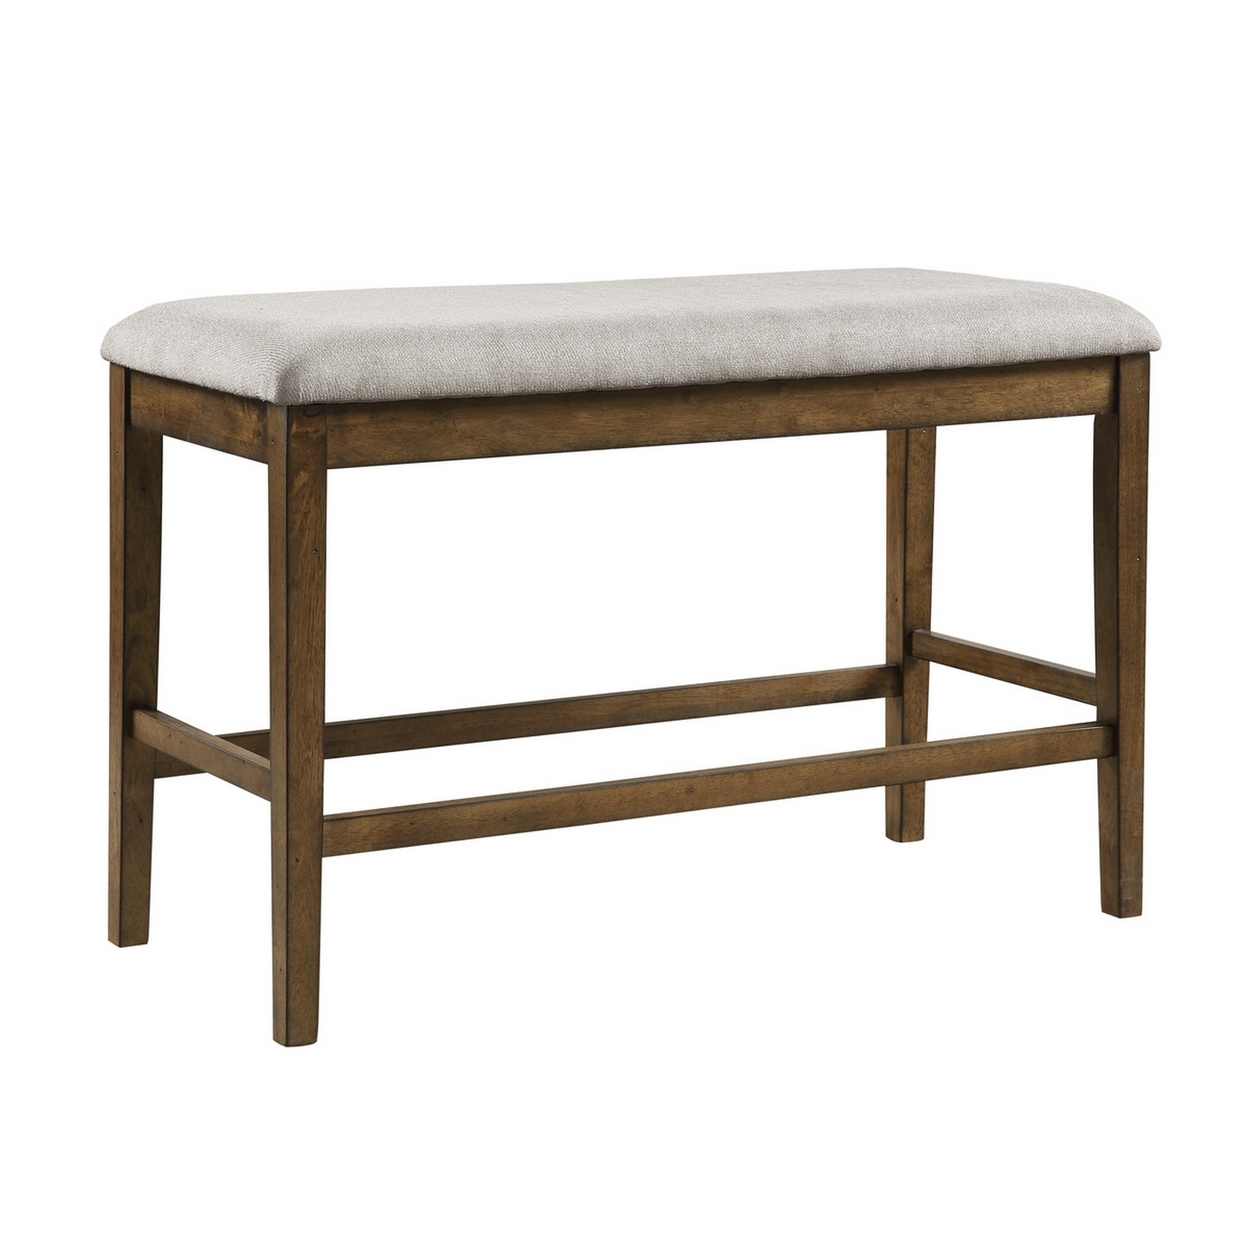 Carl 39 Inch Two Tone Counter Bench, Gray Fabric Seat, Light Oak Wood- Saltoro Sherpi